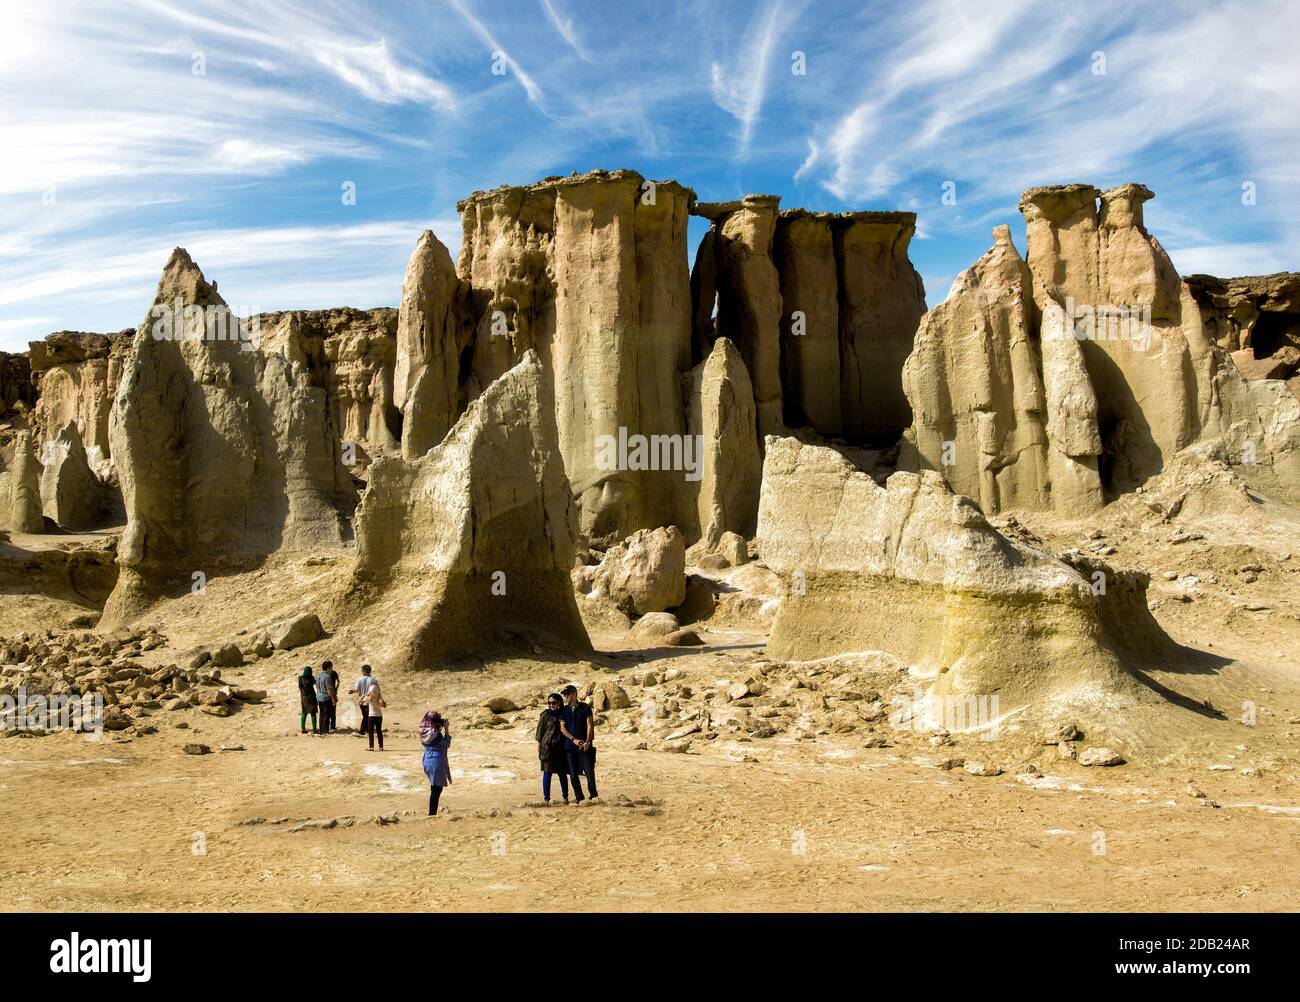 La Valle delle Stelle ora protetta come parte del Geopark dell'Isola di Qeshm, riconosciuto dall'UNESCO, nella provincia di Hormozgan in Iran. Foto Stock